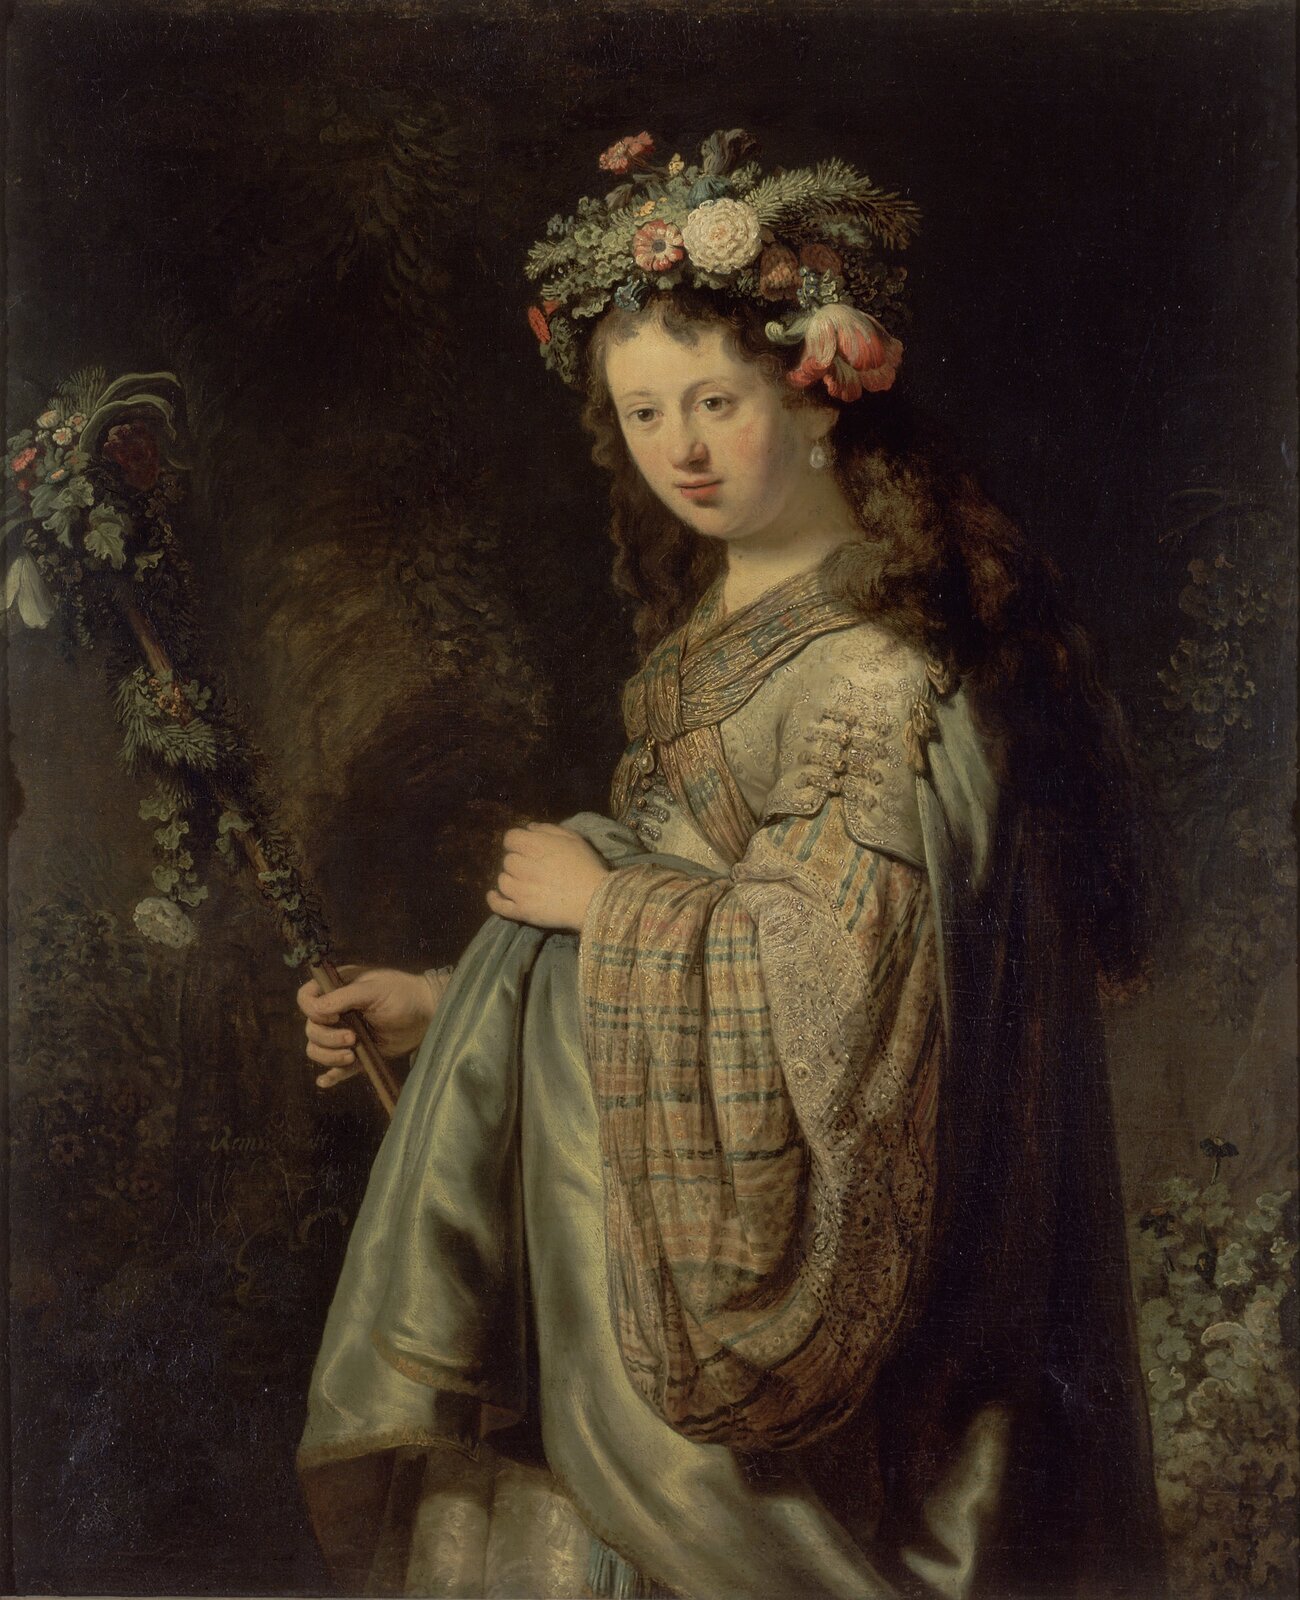 Ilustracja przedstawia obraz Rembrandta van Rijna „Saskia jako Flora”. Na ilustracji znajduje się kobieta w długich, brązowych, kręconych włosach. Na głowie ma wianek z kwiatów. Ubrana jest w szaro-brązowy płaszcz. W dłoni trzyma różdżkę oplecioną kwiatami. Za kobietą znajduje się ciemne tło. 